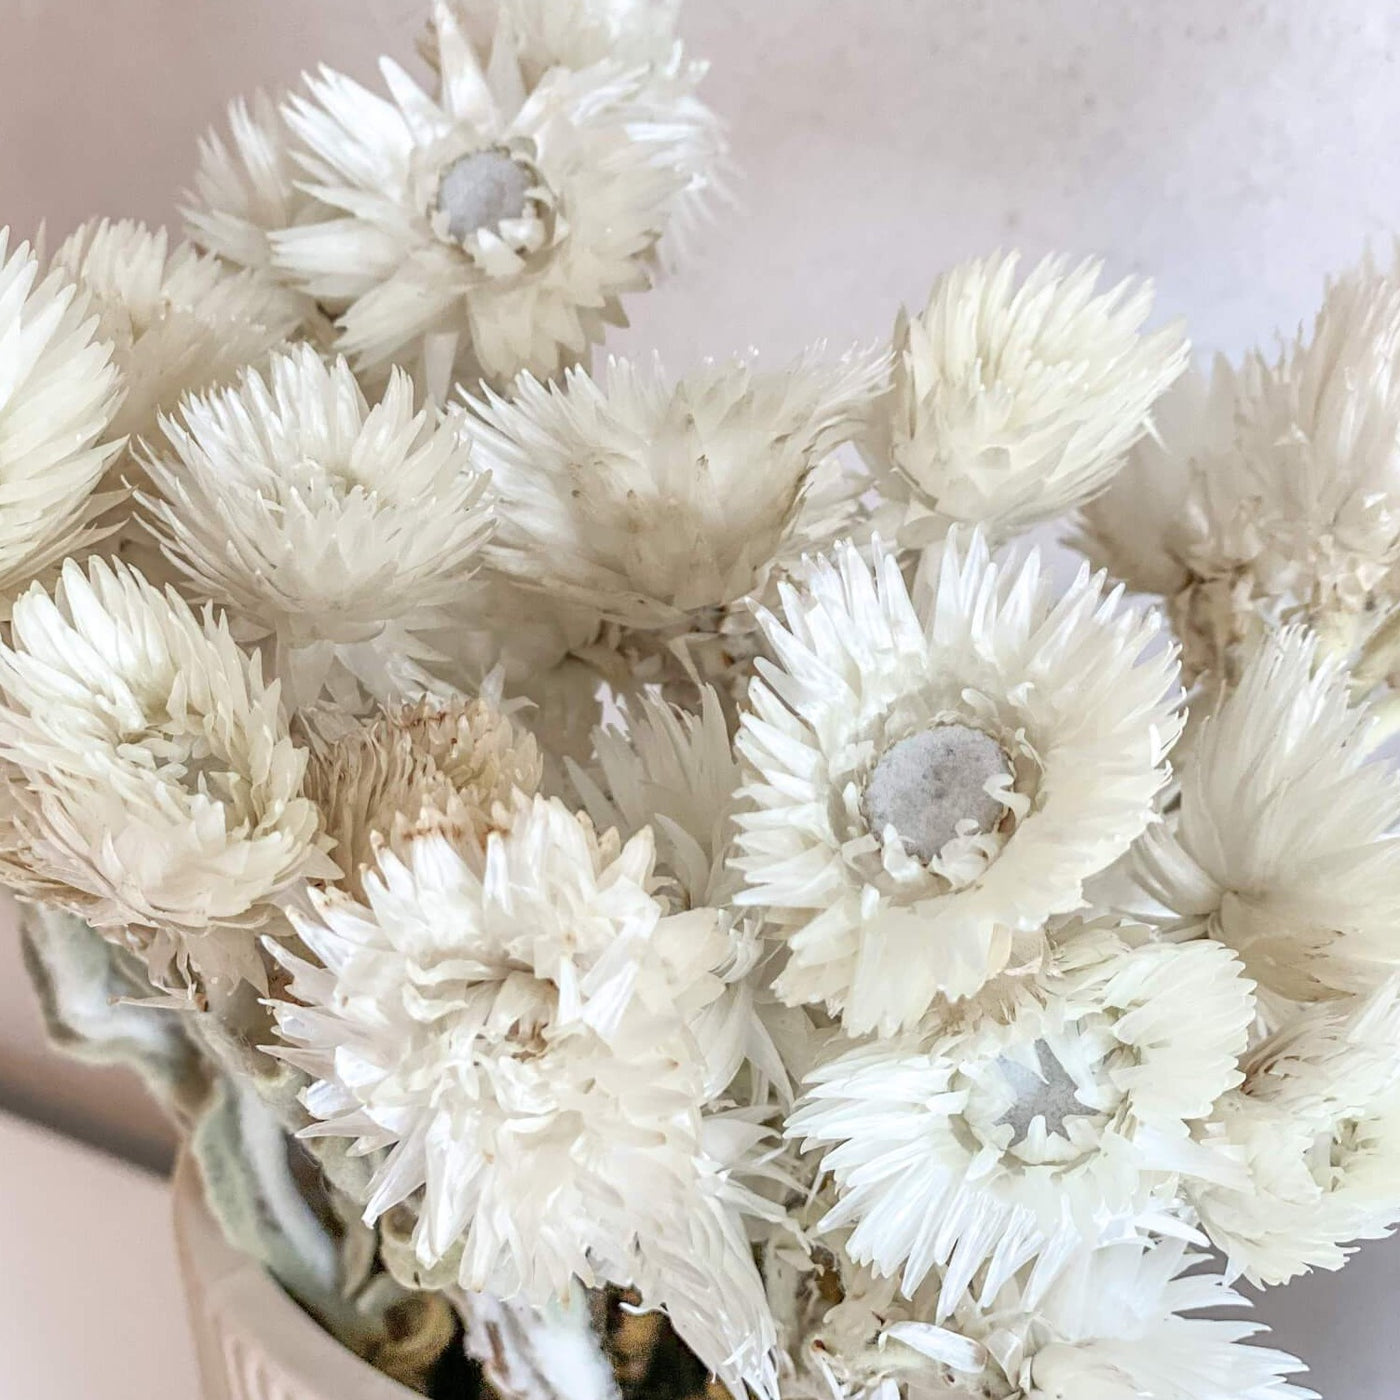 Strohblumen getrocknet | Capblumen | 30-35 cm | Landhaus-Stil Rarität - Farbe: weiß